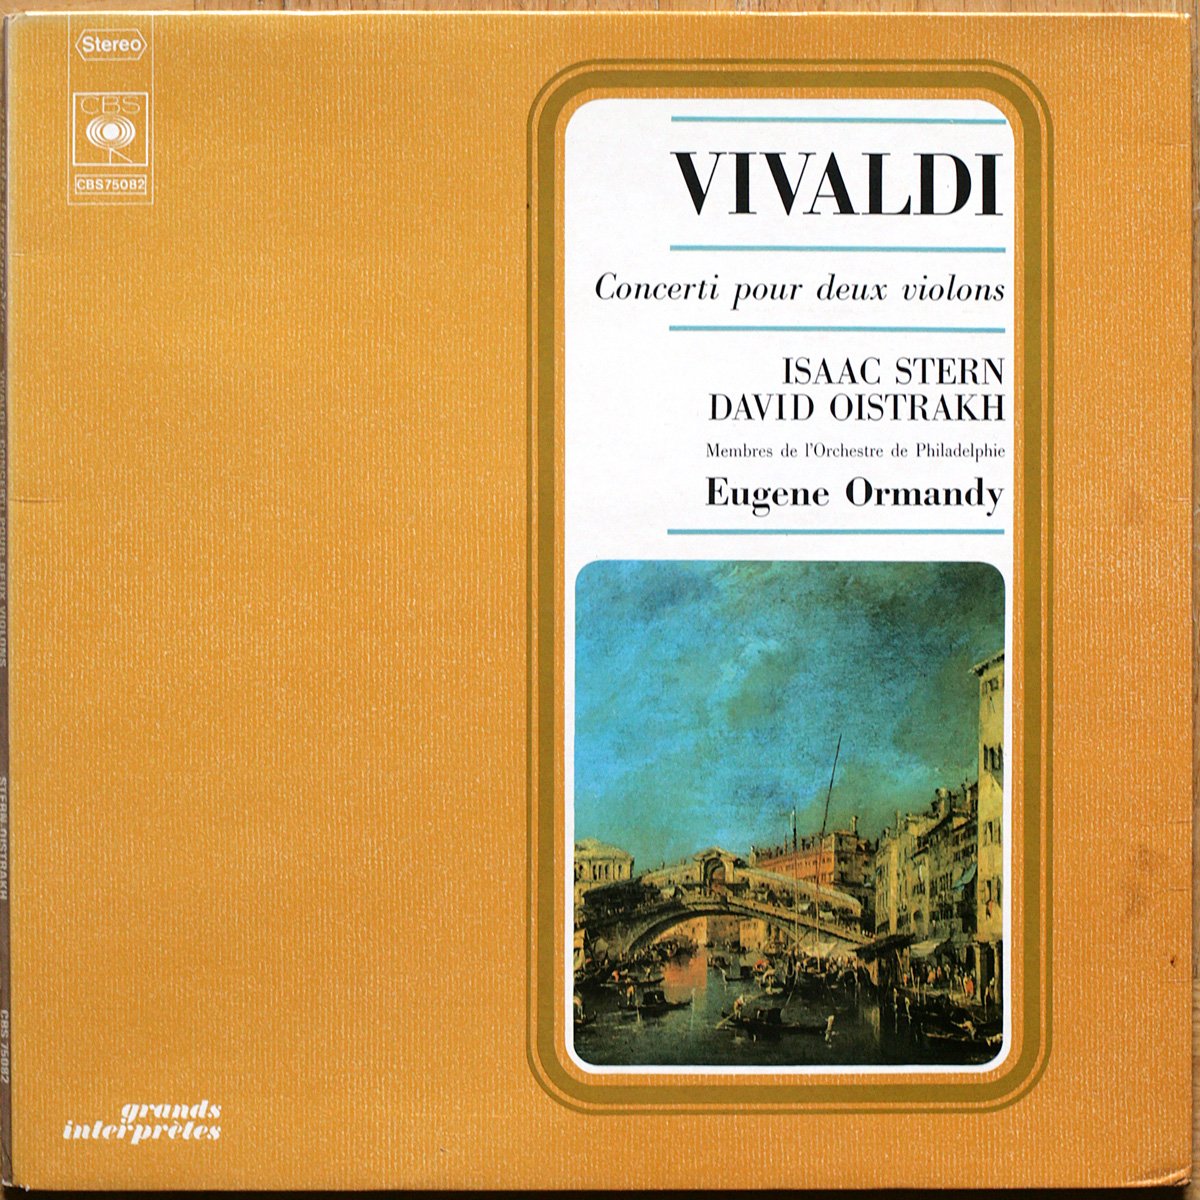 Vivaldi • Concerti pour deux violons • Quattro concerti per due violini e orchestra • CBS 75082 • Isaac Stern • David Oïstrakh • Philadelphia Orchestra • Eugene Ormandy